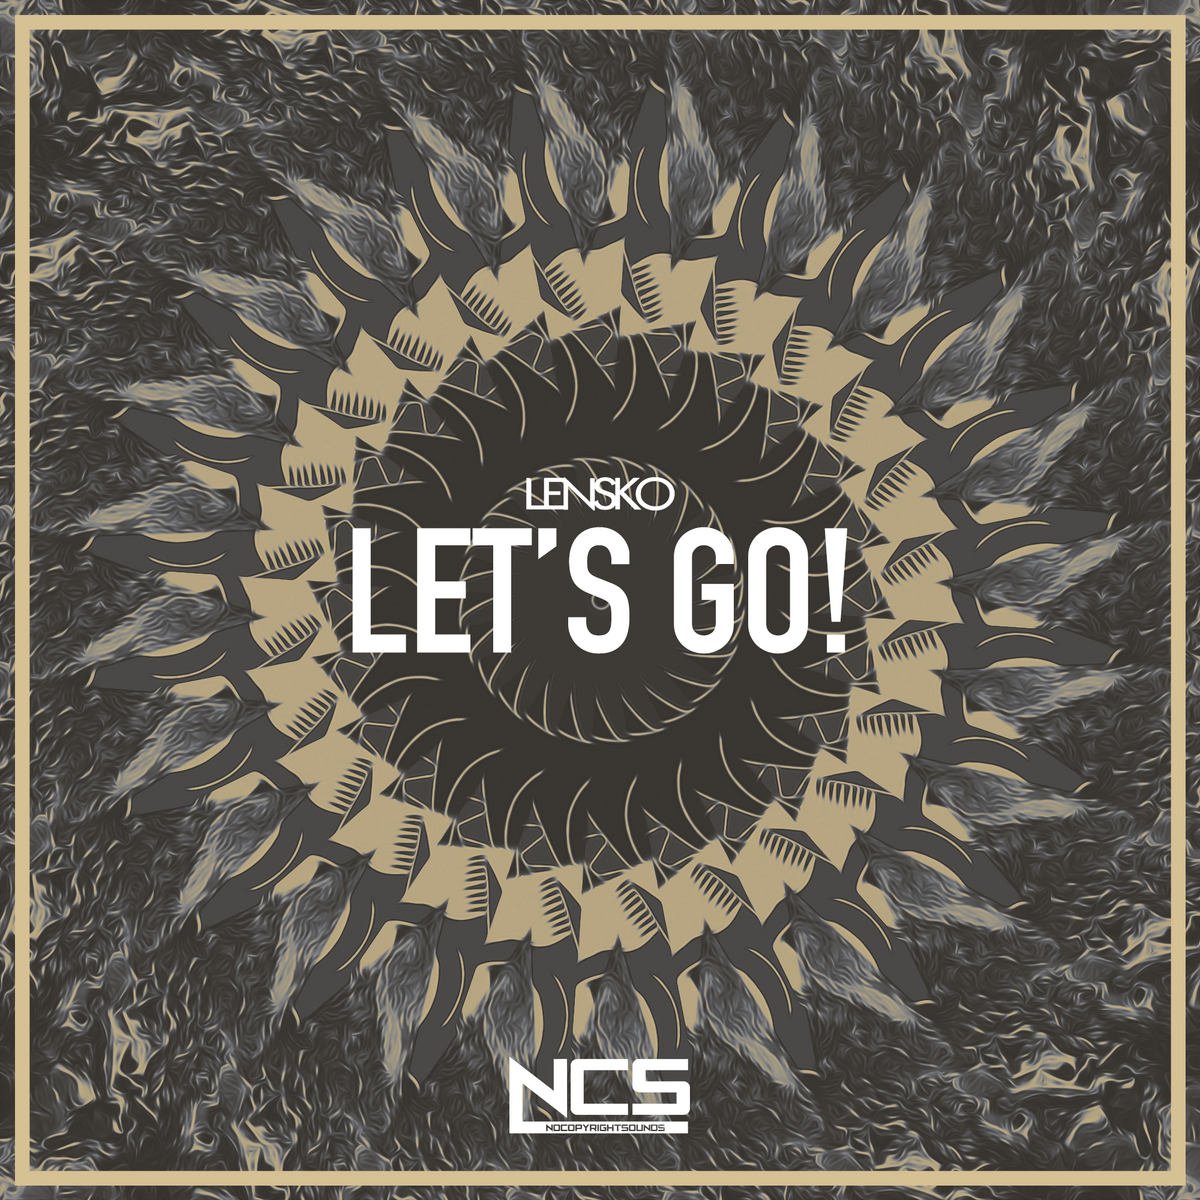 Lensko Lets go. Lensko - Let's go! [NCS release]. NCS обложки. Let/s go ремикс. Lets go further